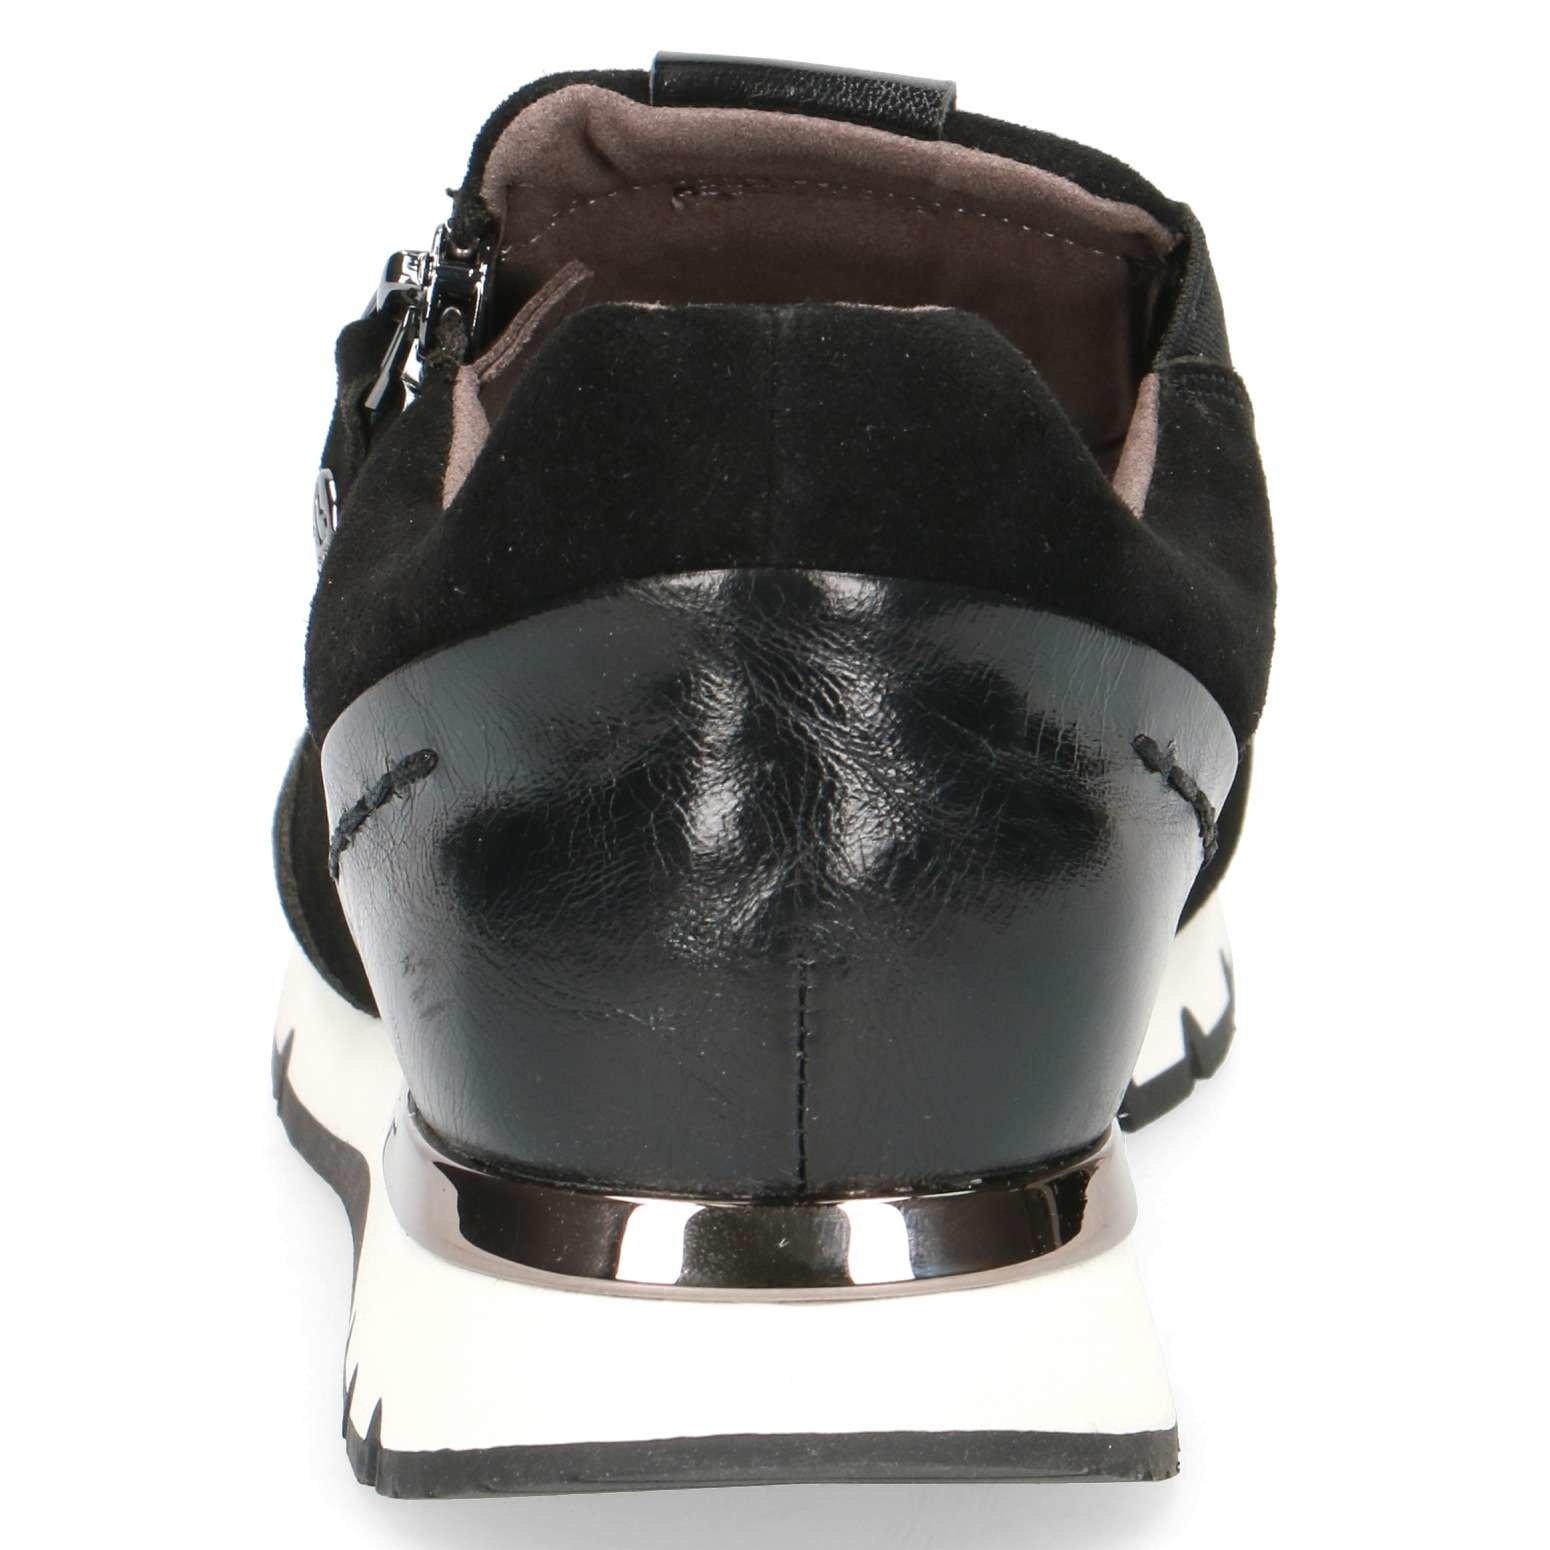 Caprice Caprice 24703 - zwart combi - sneaker